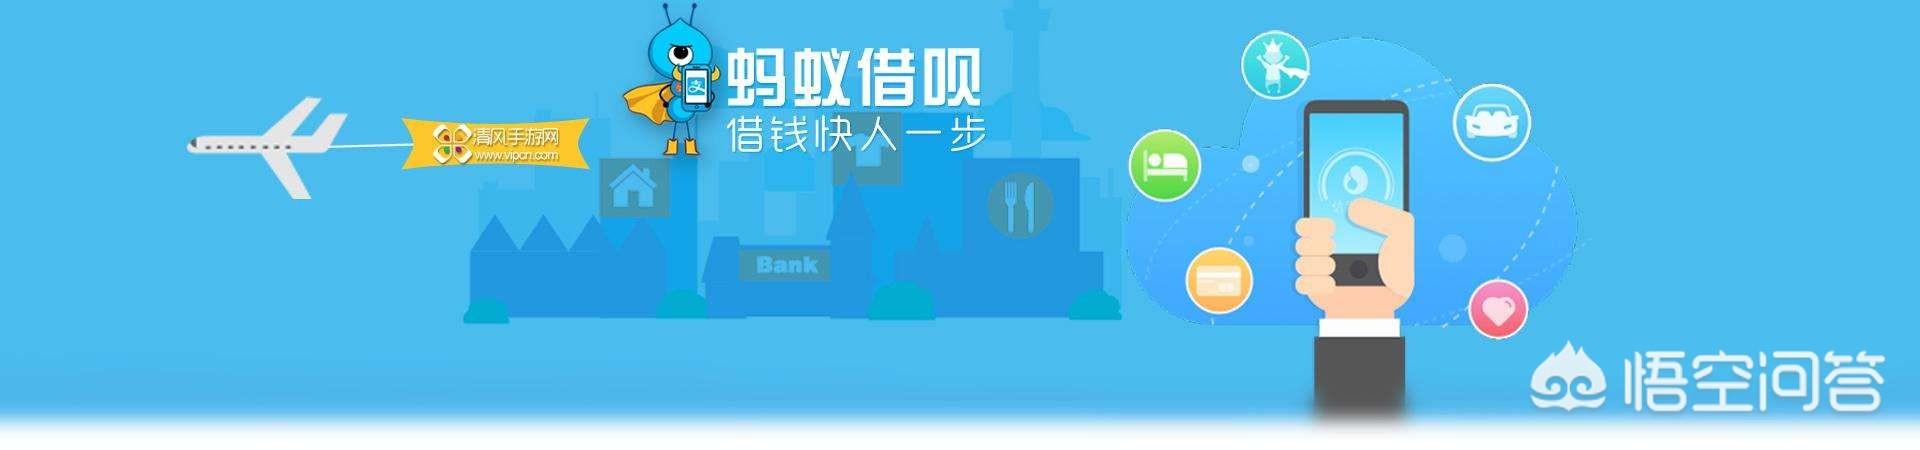 针对杭州银行提出有用过蚂蚁借呗、白条、花呗等金融信贷的一律不给贷款，你怎么对待？